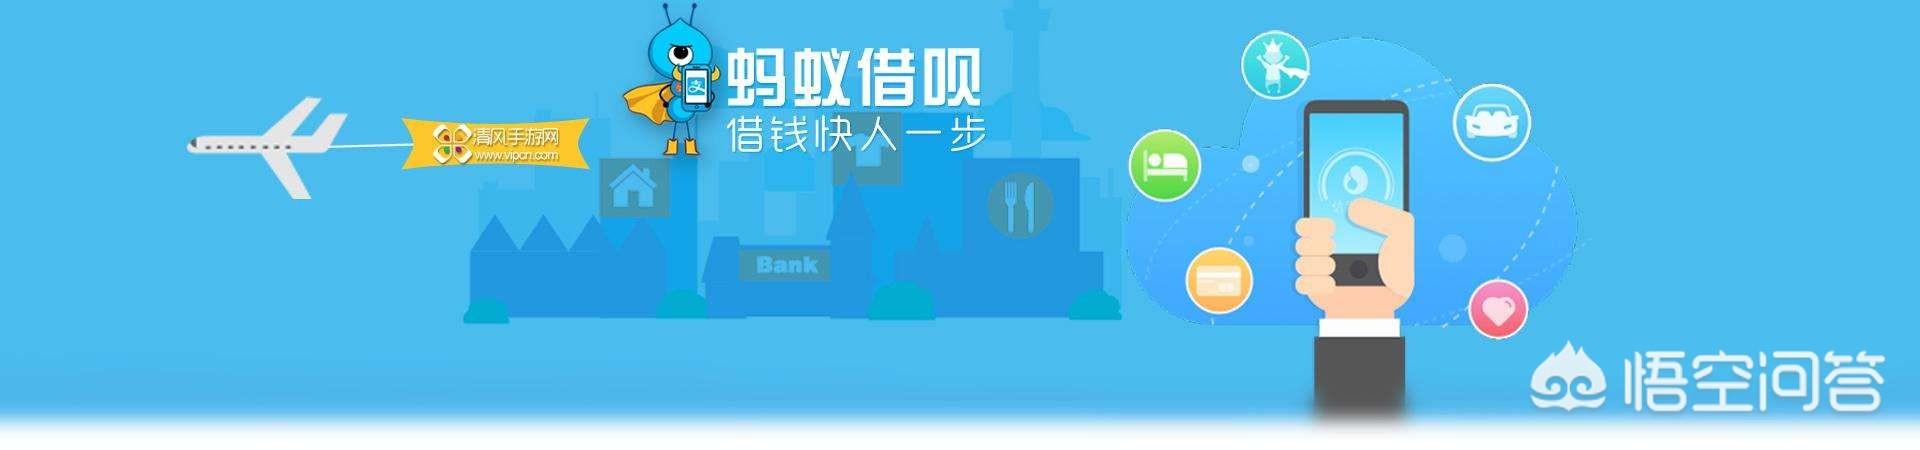 针对杭州银行提出有用过蚂蚁借呗、白条、花呗等金融信贷的一律不给贷款，你怎么对待？